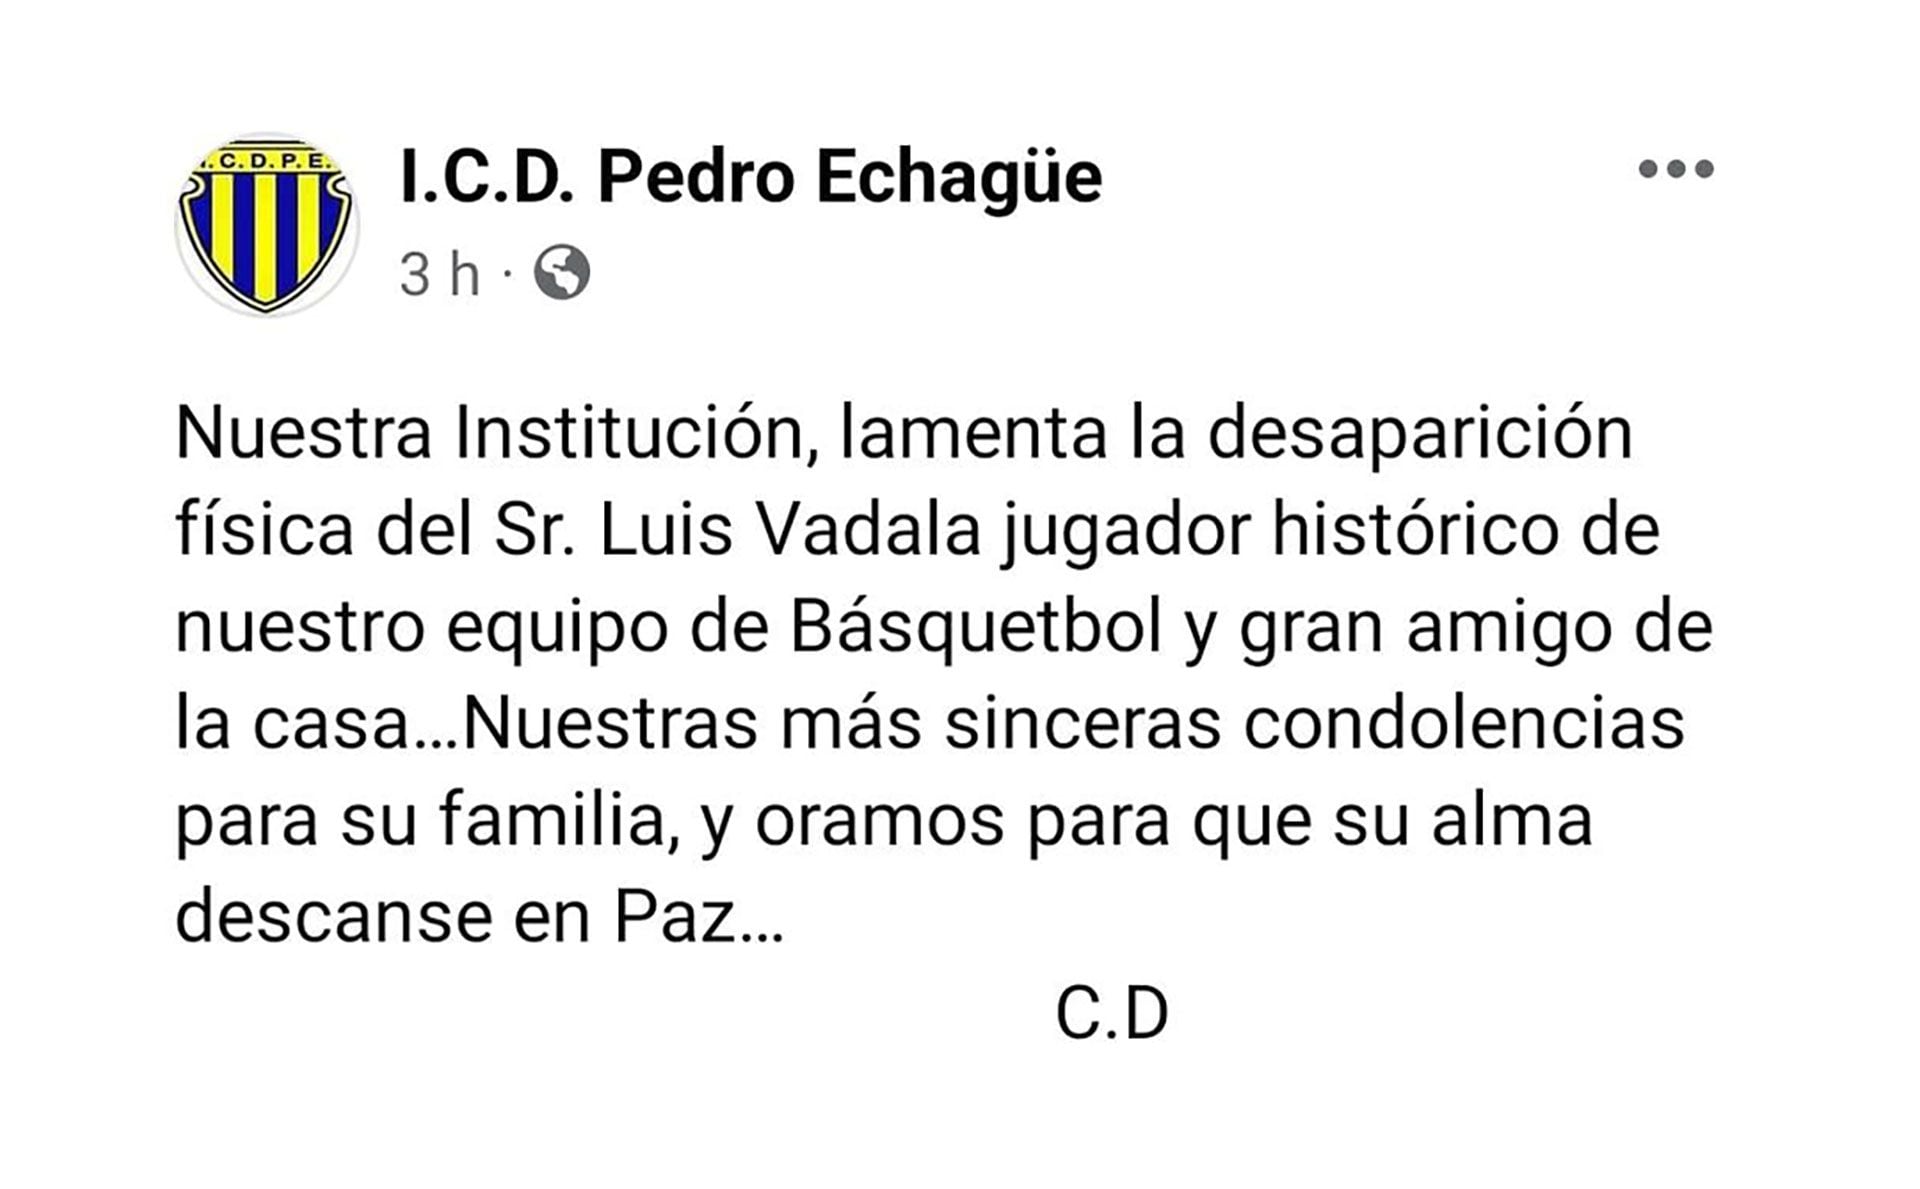 El club Pedro Echagüe despide a Luis Vadalá